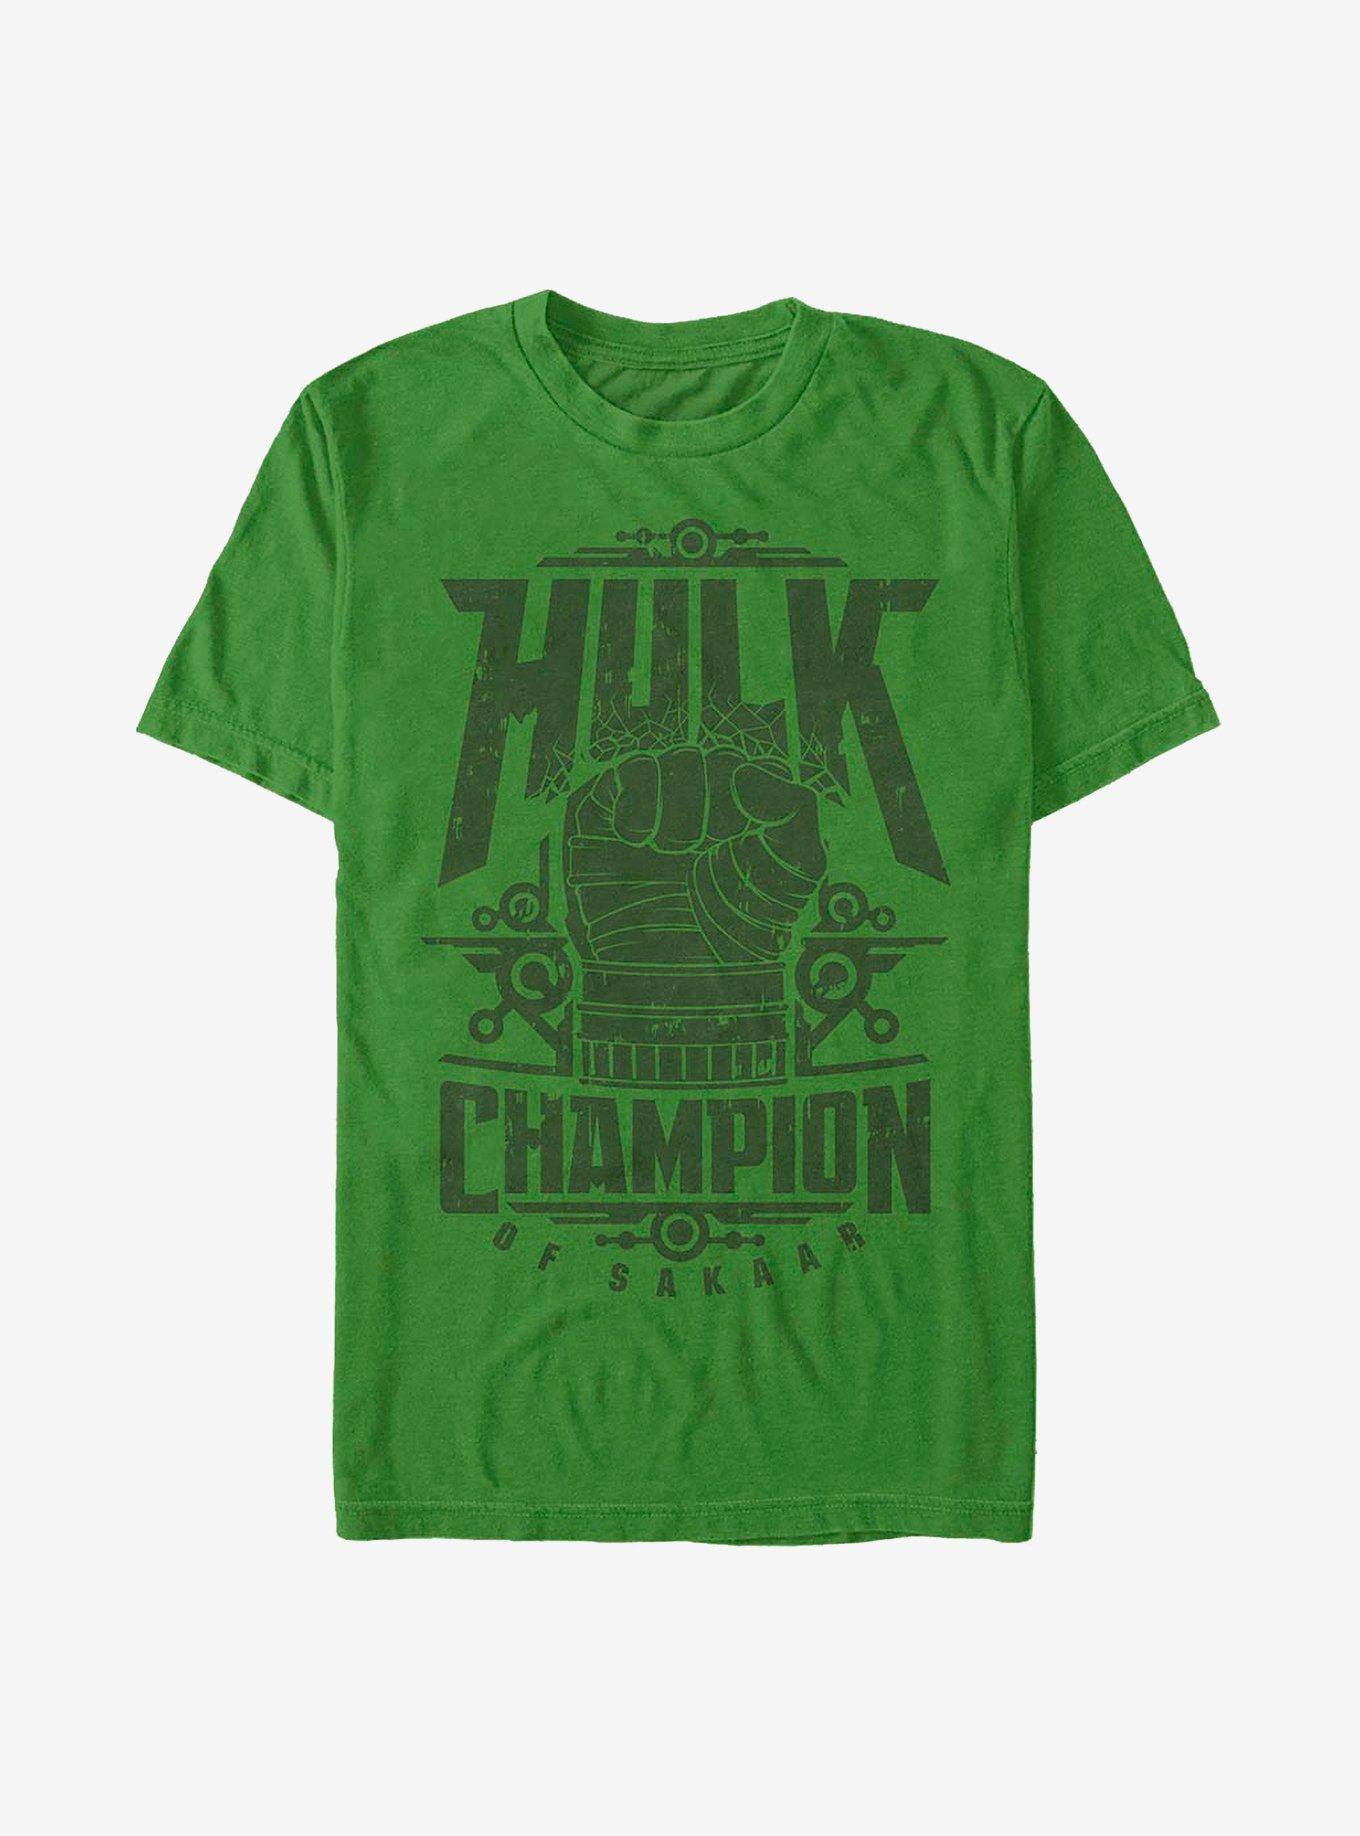 Marvel The Hulk Champ Hulk T-Shirt, KELLY, hi-res